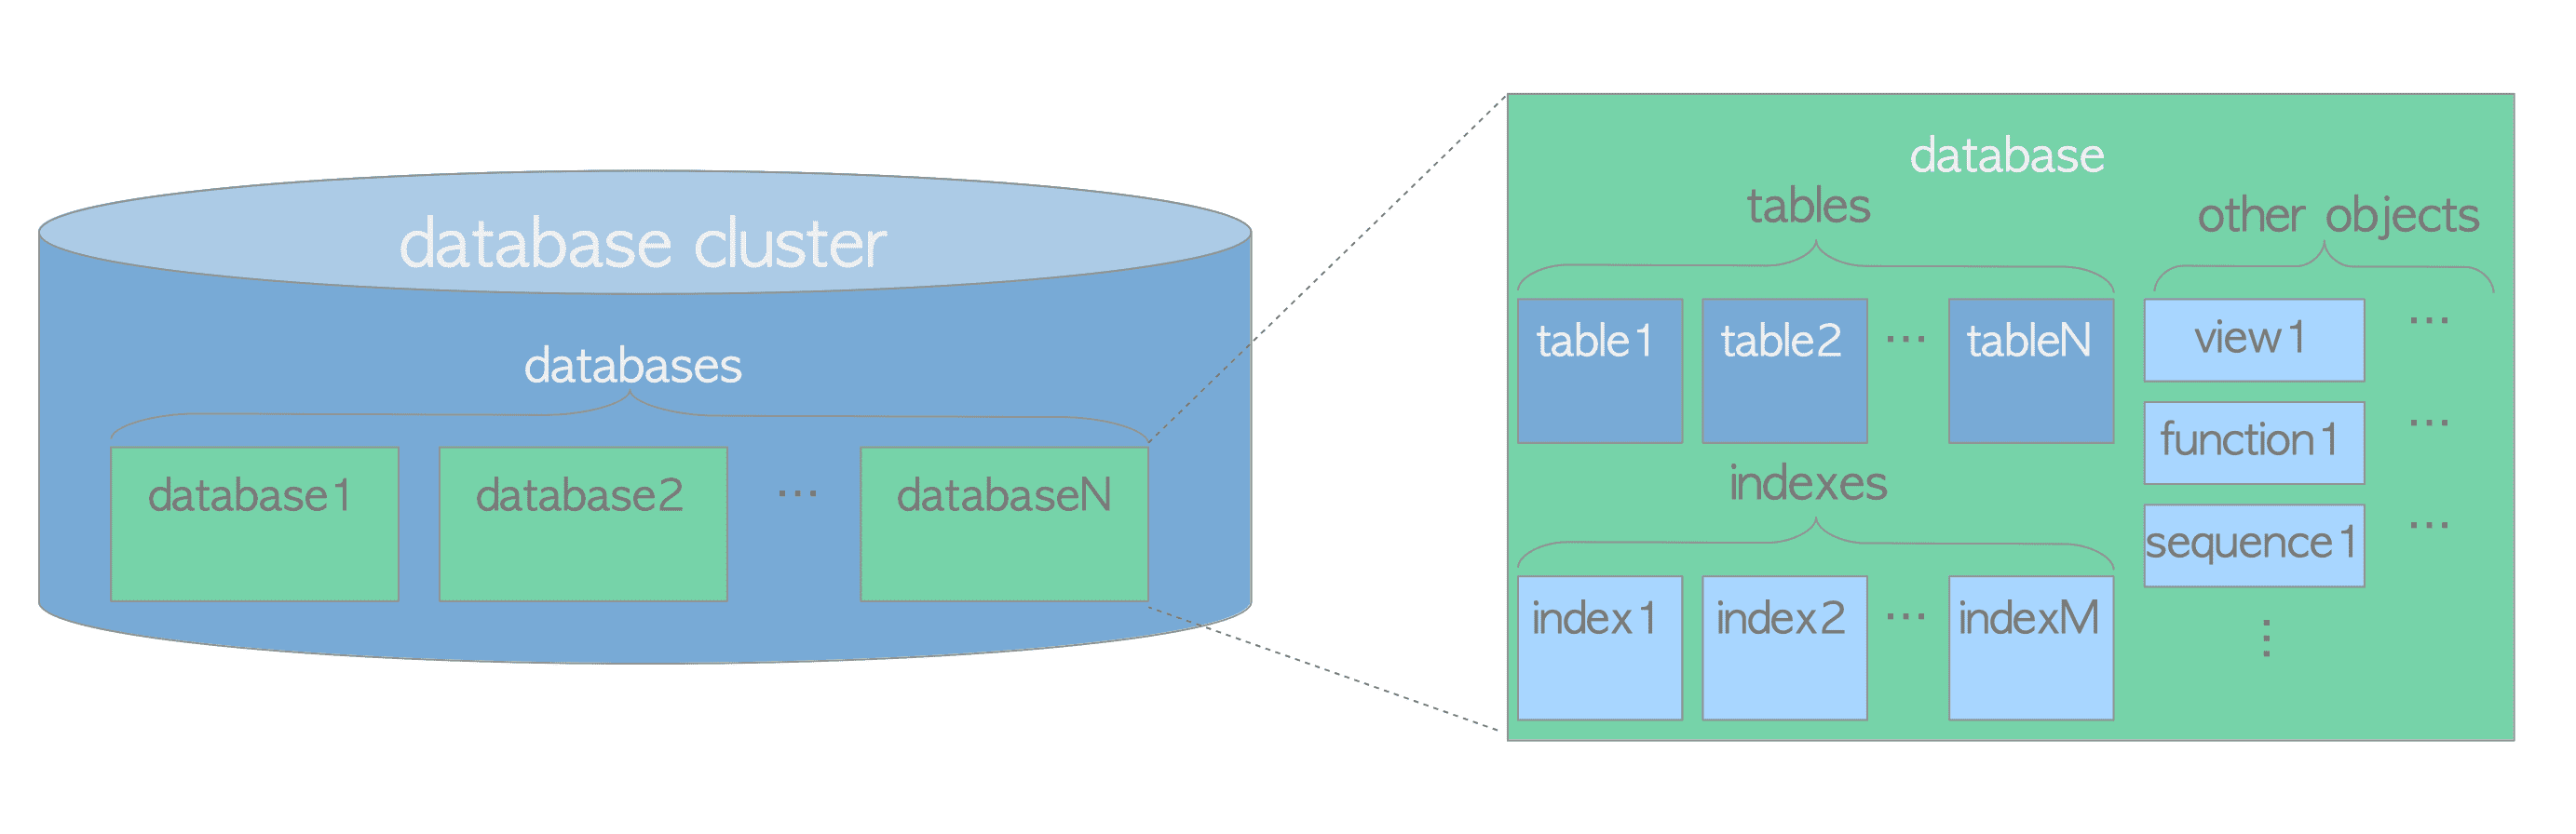 图1.1 数据库逻辑结构